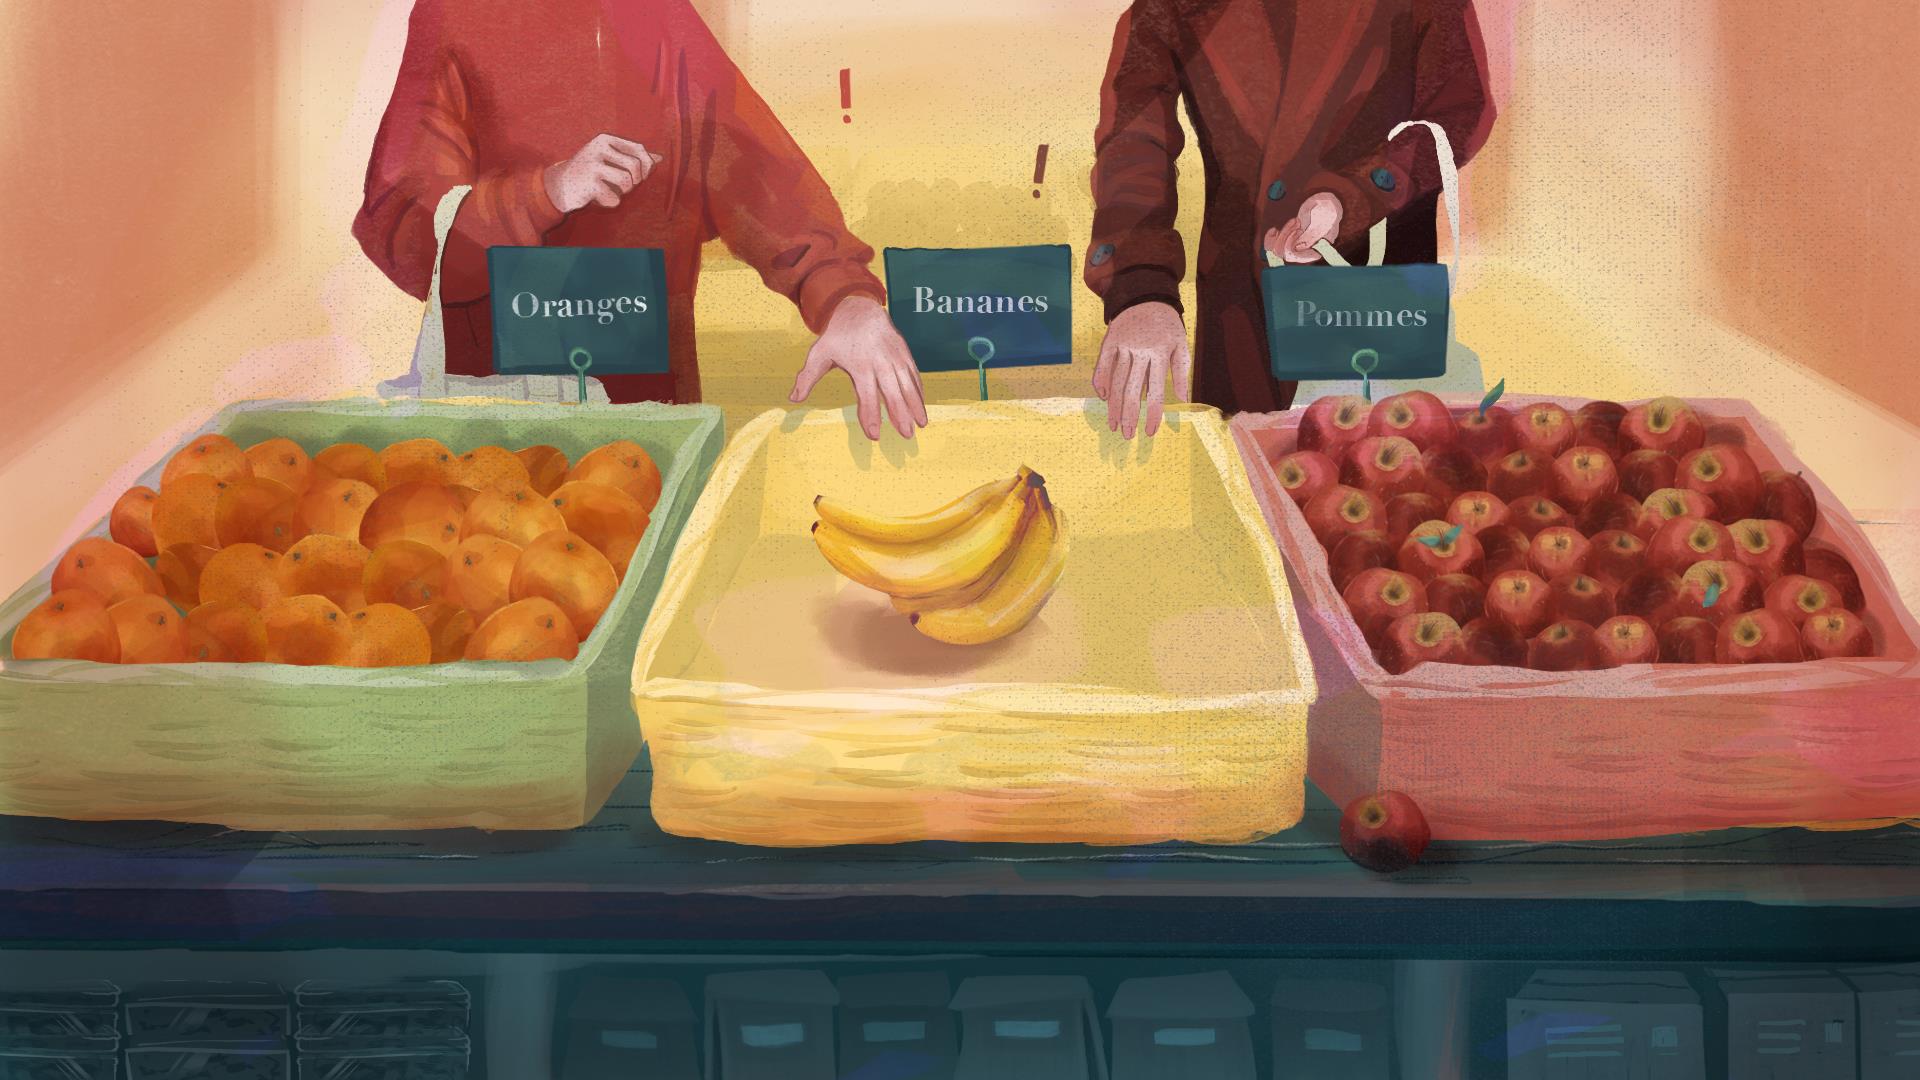 Deux consommateurs tendent la main au même moment vers les seules bananes qui restent dans un bac situé entre deux autres bacs remplis de pommes et d’oranges.